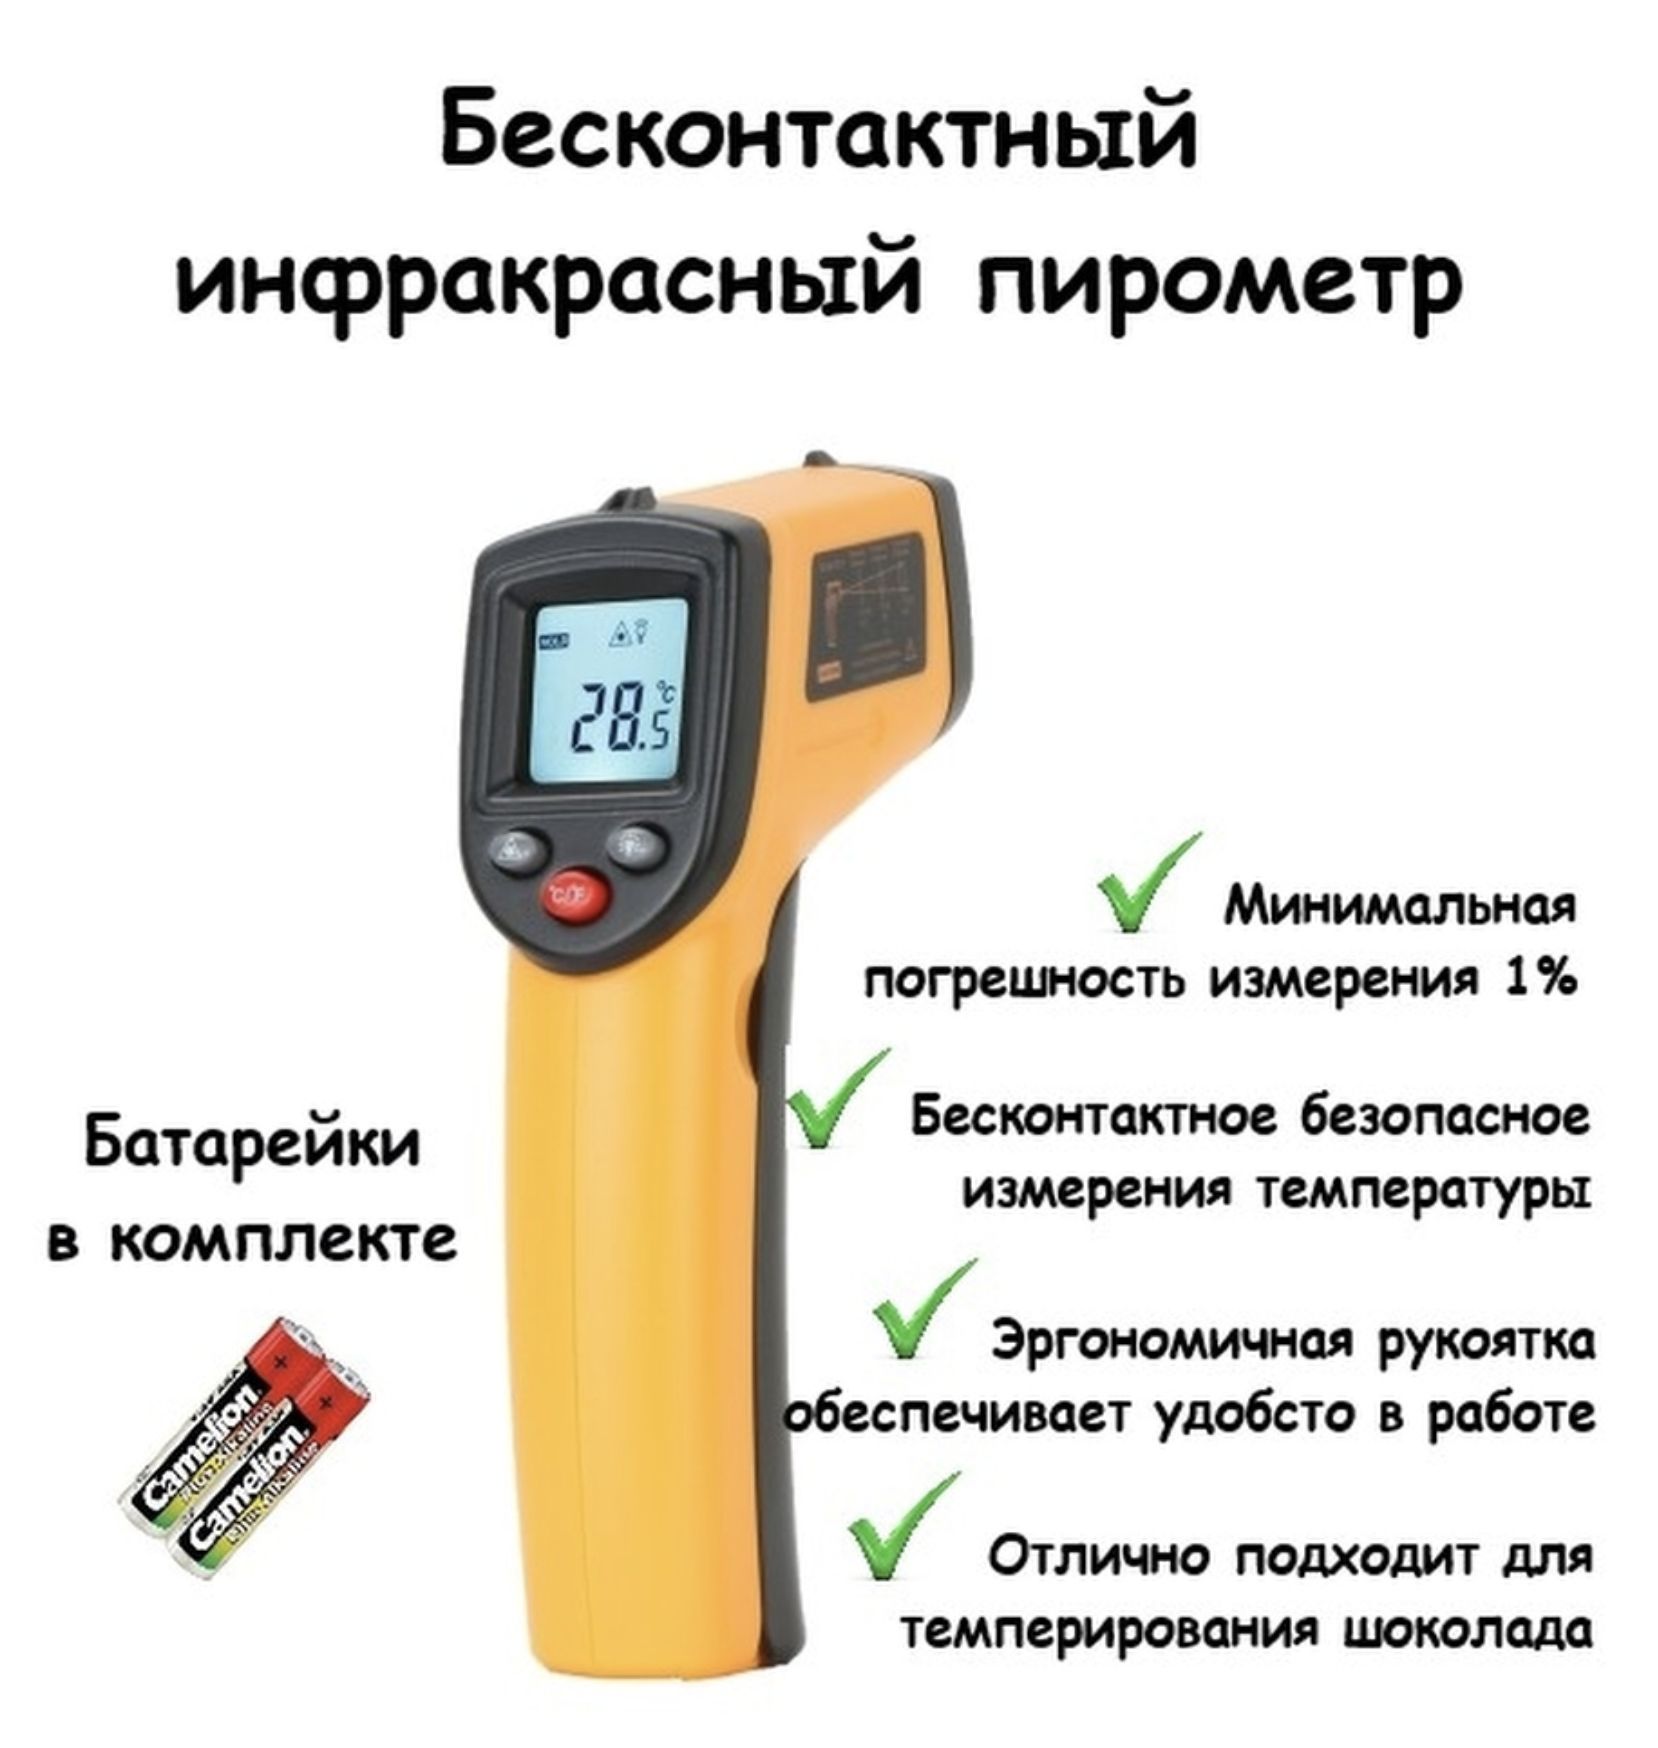 Купить Пирометр Для Измерения Температуры